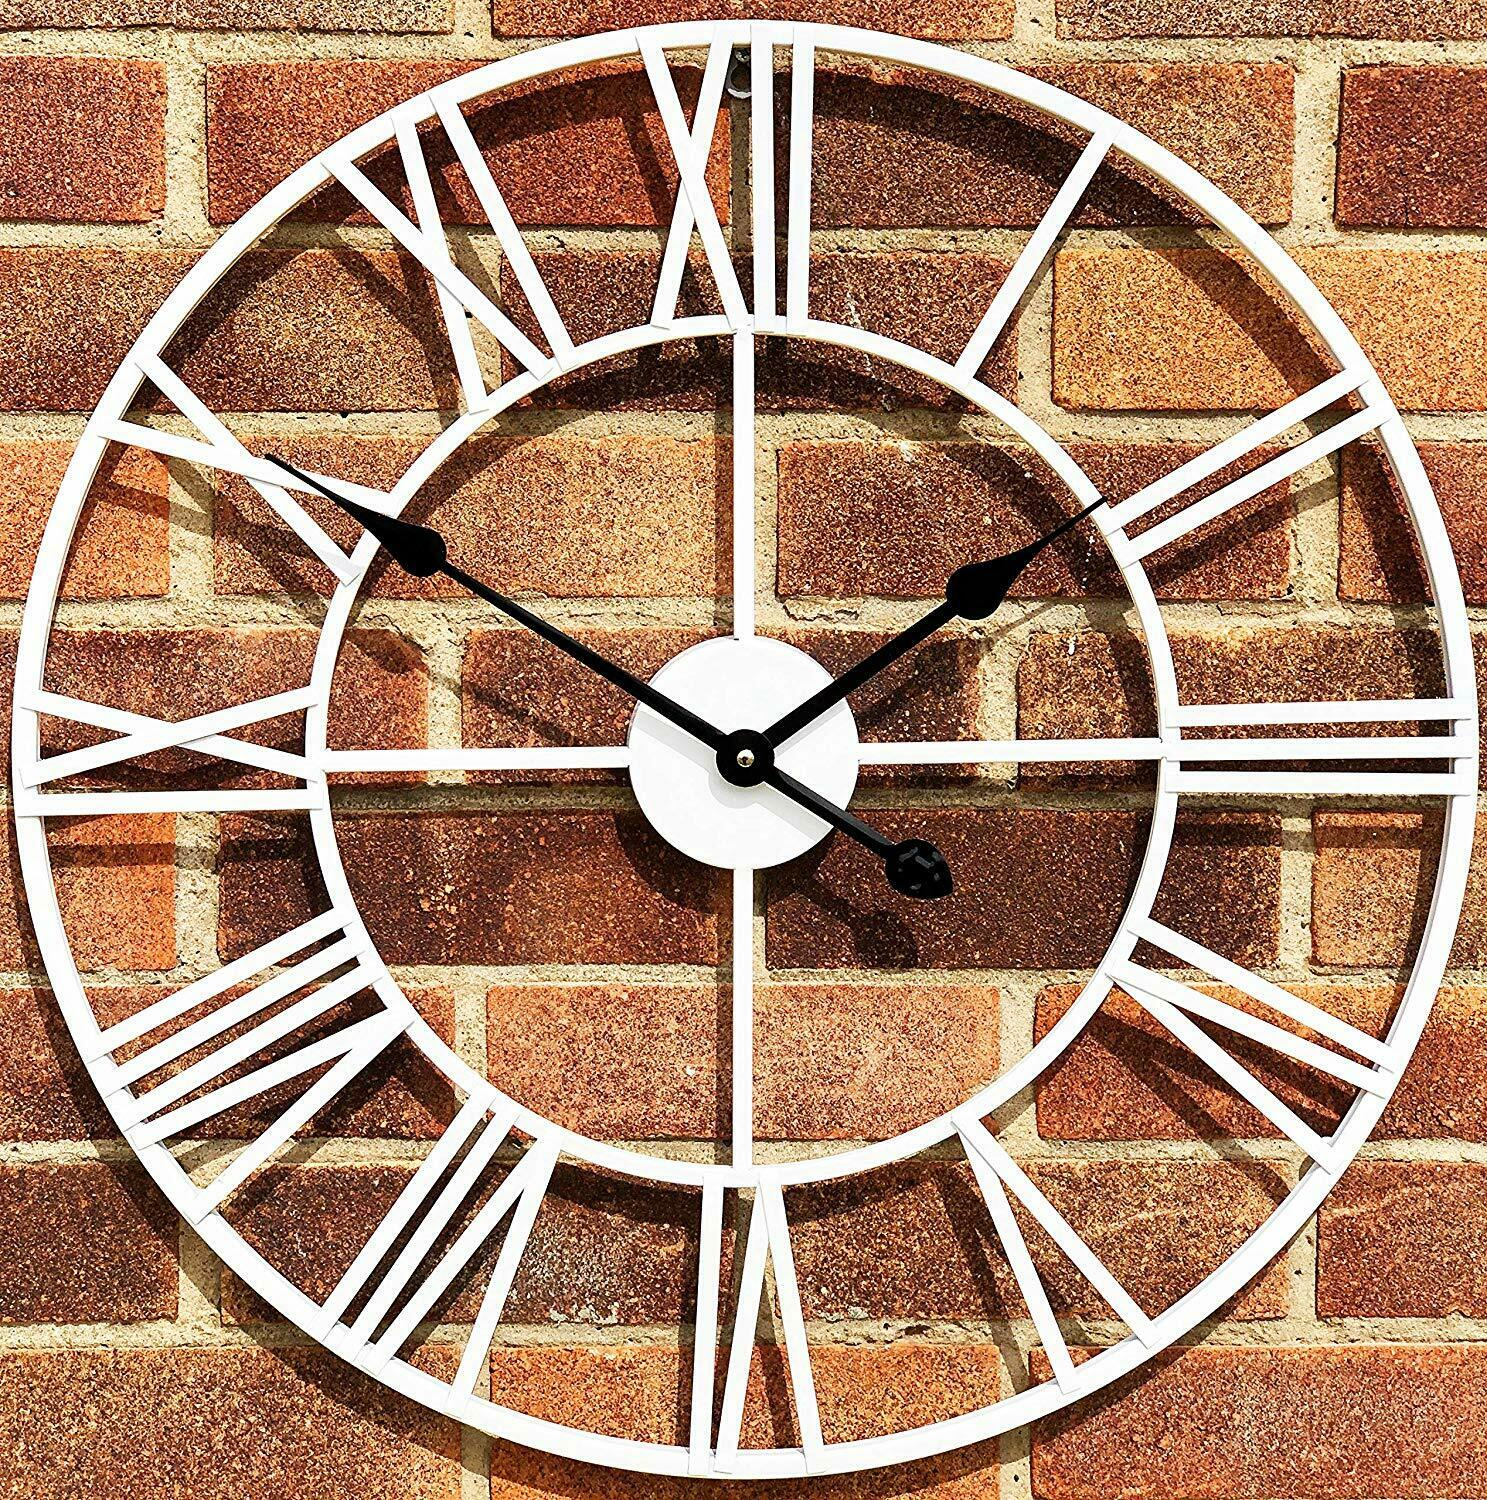 60cm White Metal Roman Clock